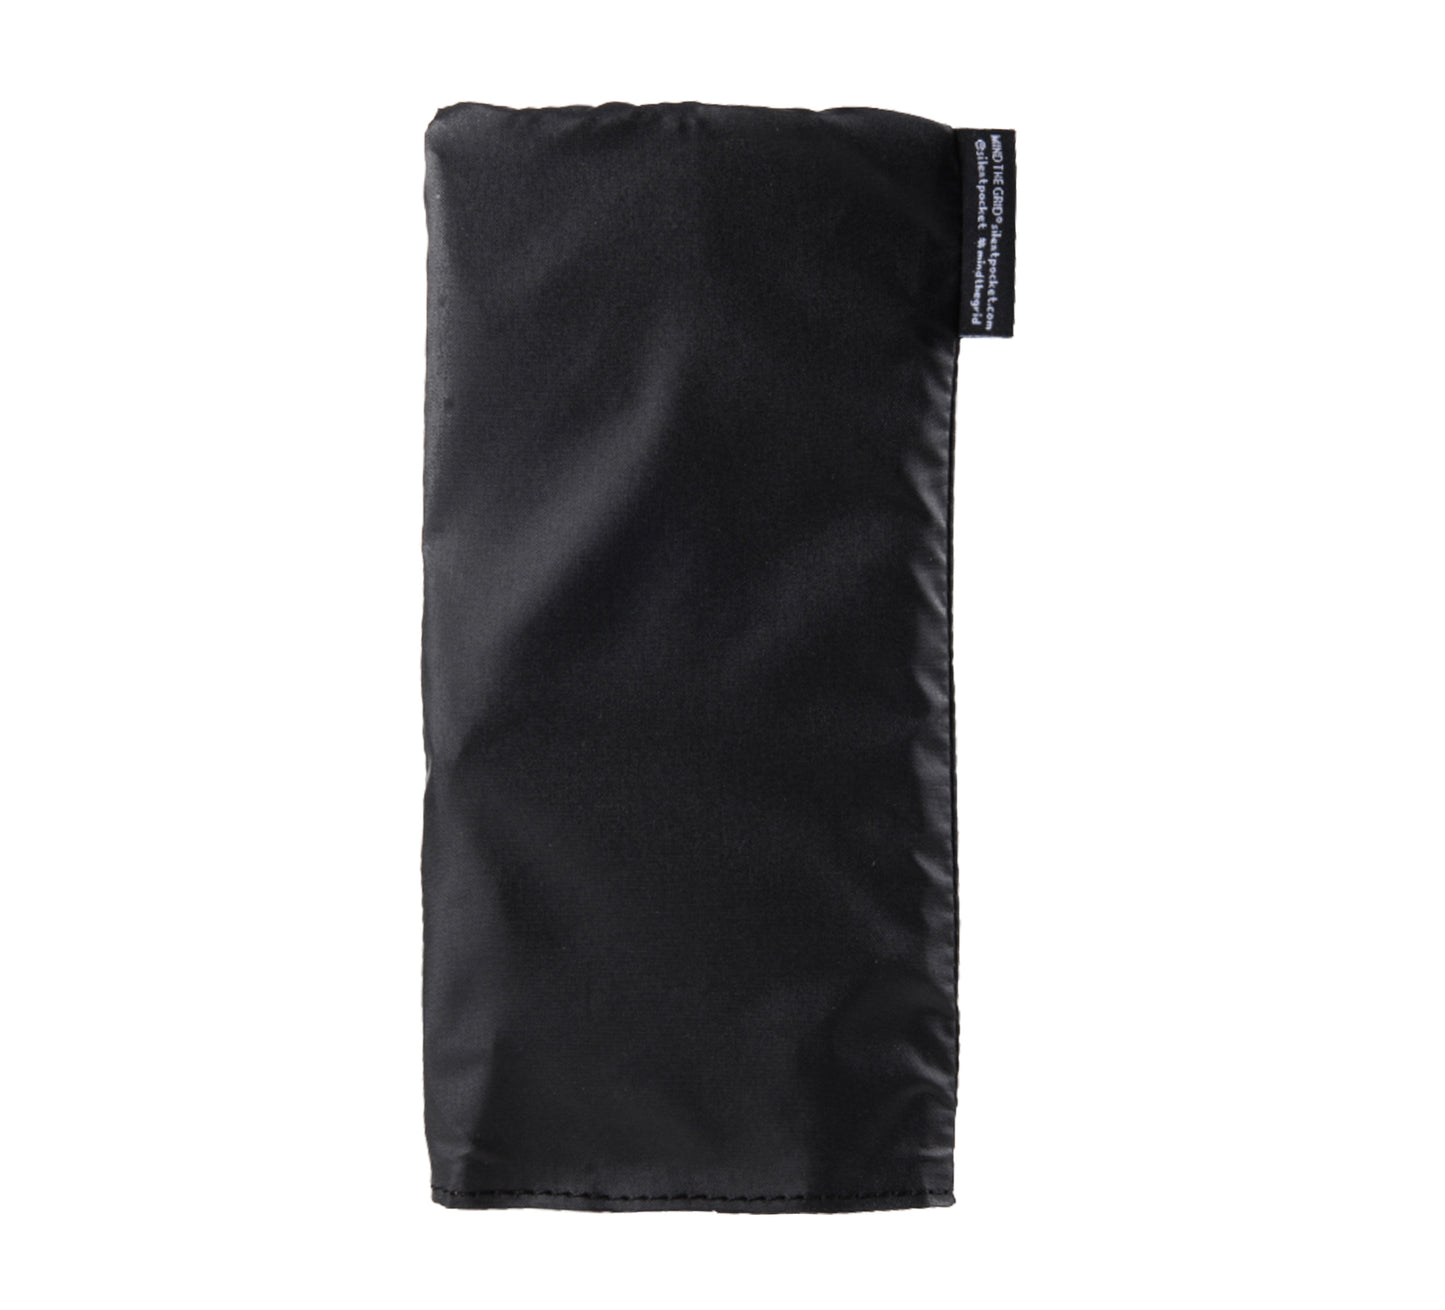 SLNT - Silent Pocket fleksibel Faradaybag for bilnøkler